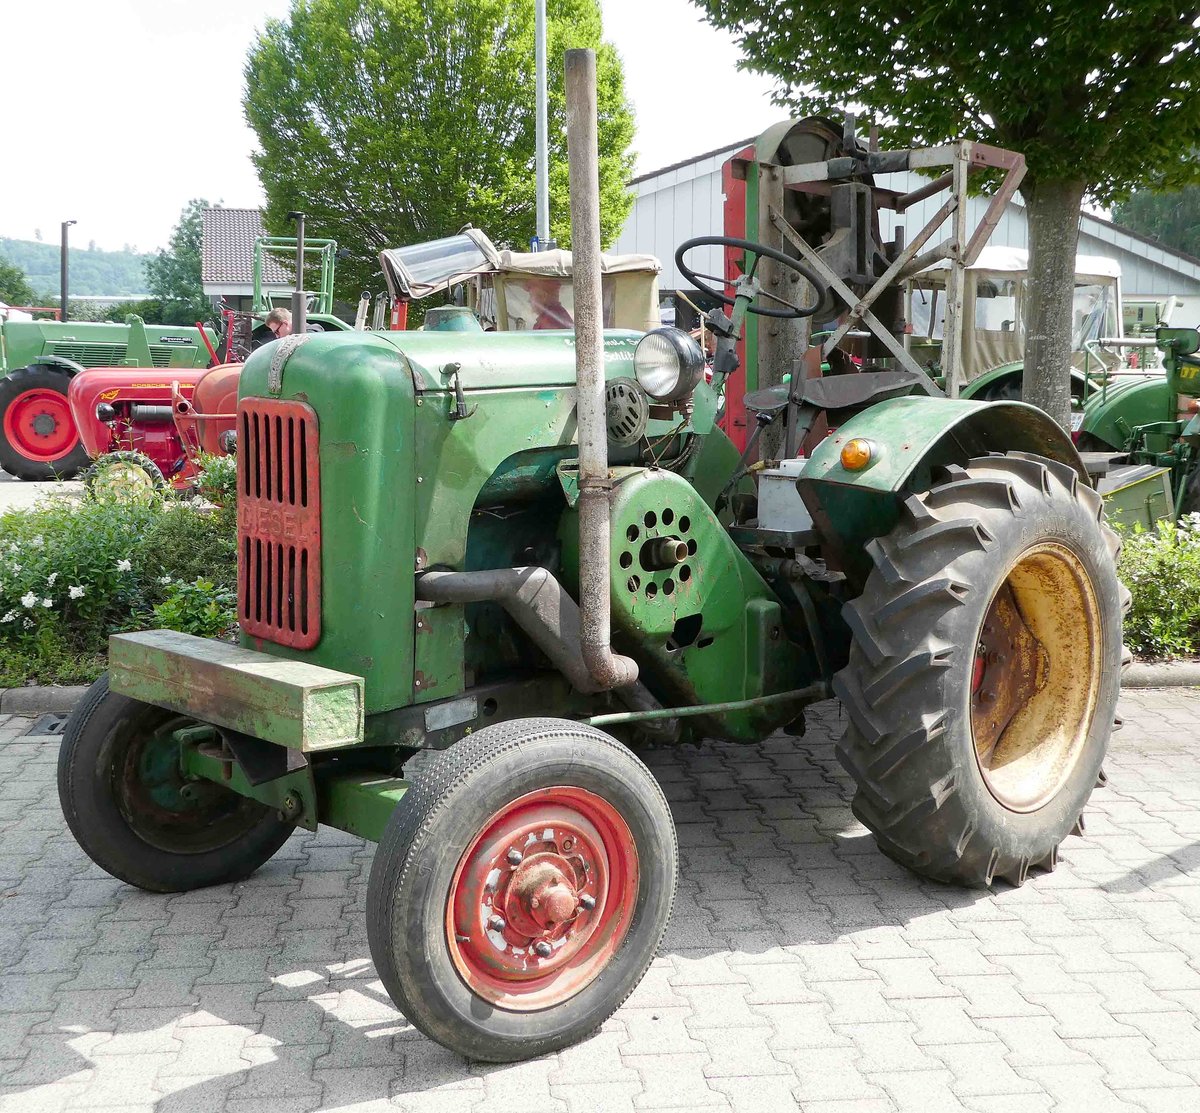 =Normag mit Bandsäge, gesehen bei der Traktorenausstellung  Ahle Bulldogge us Angeschbach oh Lannehuse  in Angersbach im Juni 2018